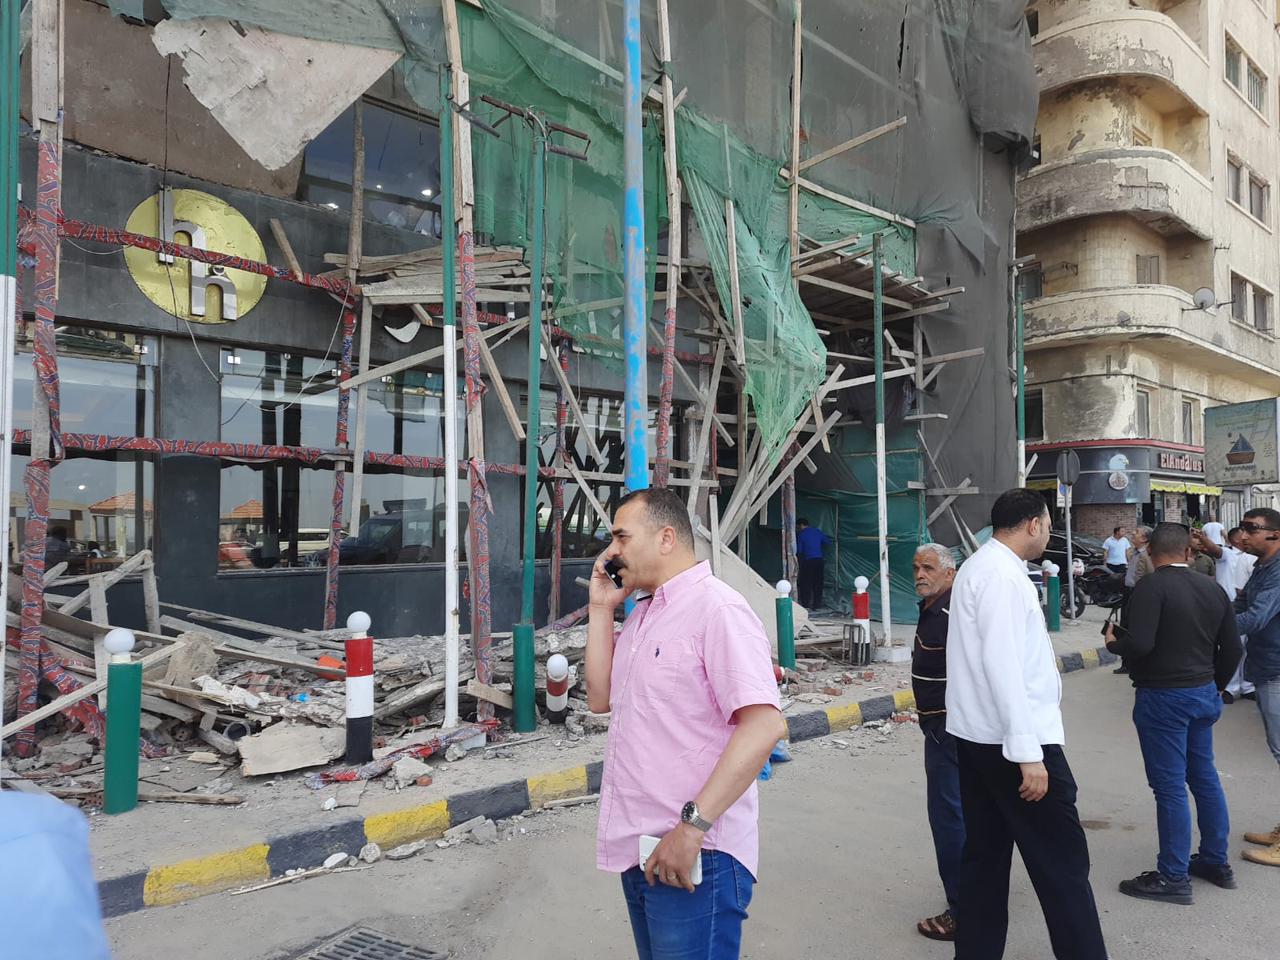  سقوط سقف فندق بكورنيش الإسكندرية